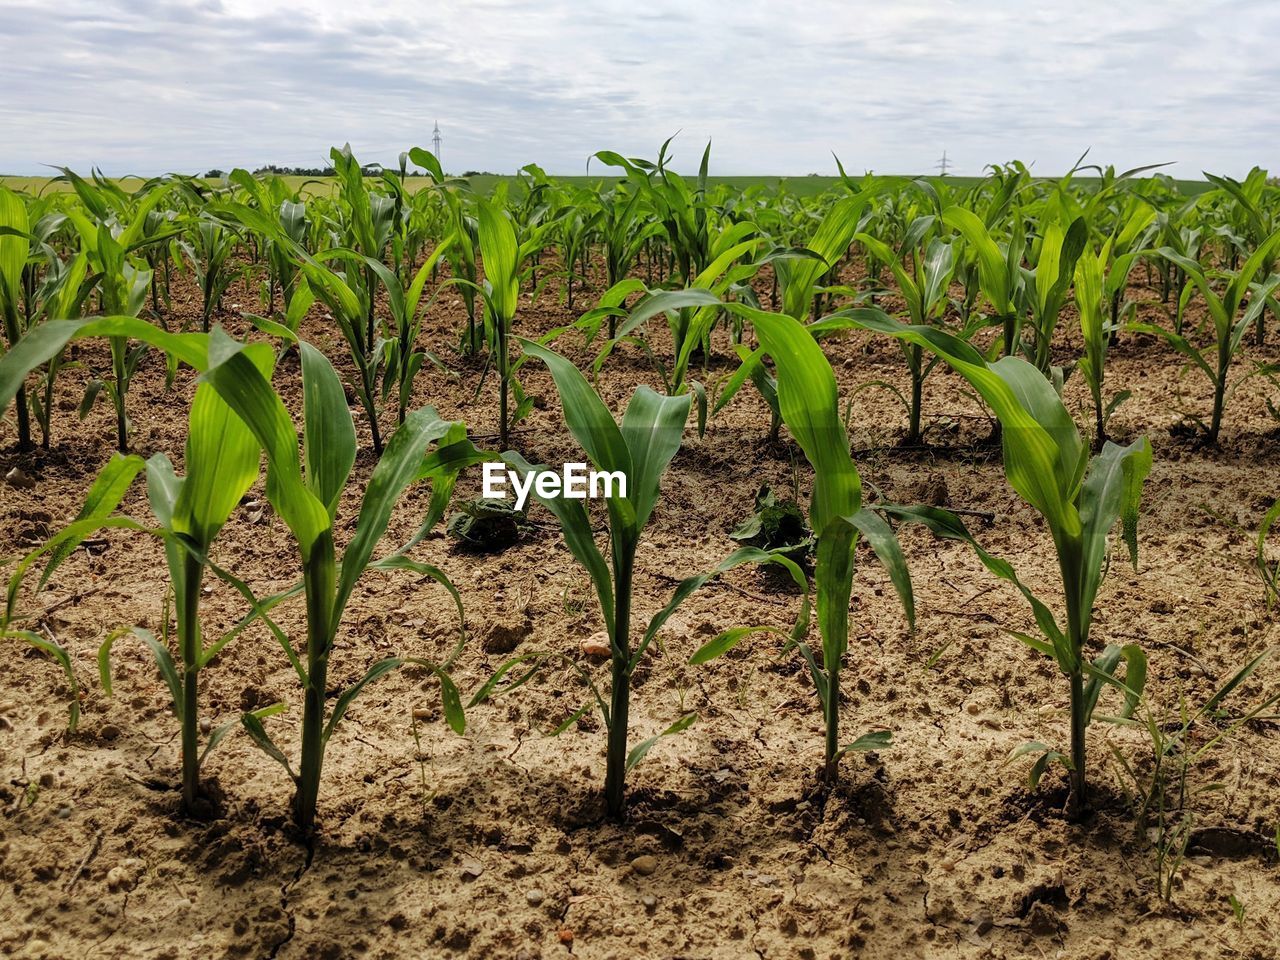 Corn plants growing on field against sky